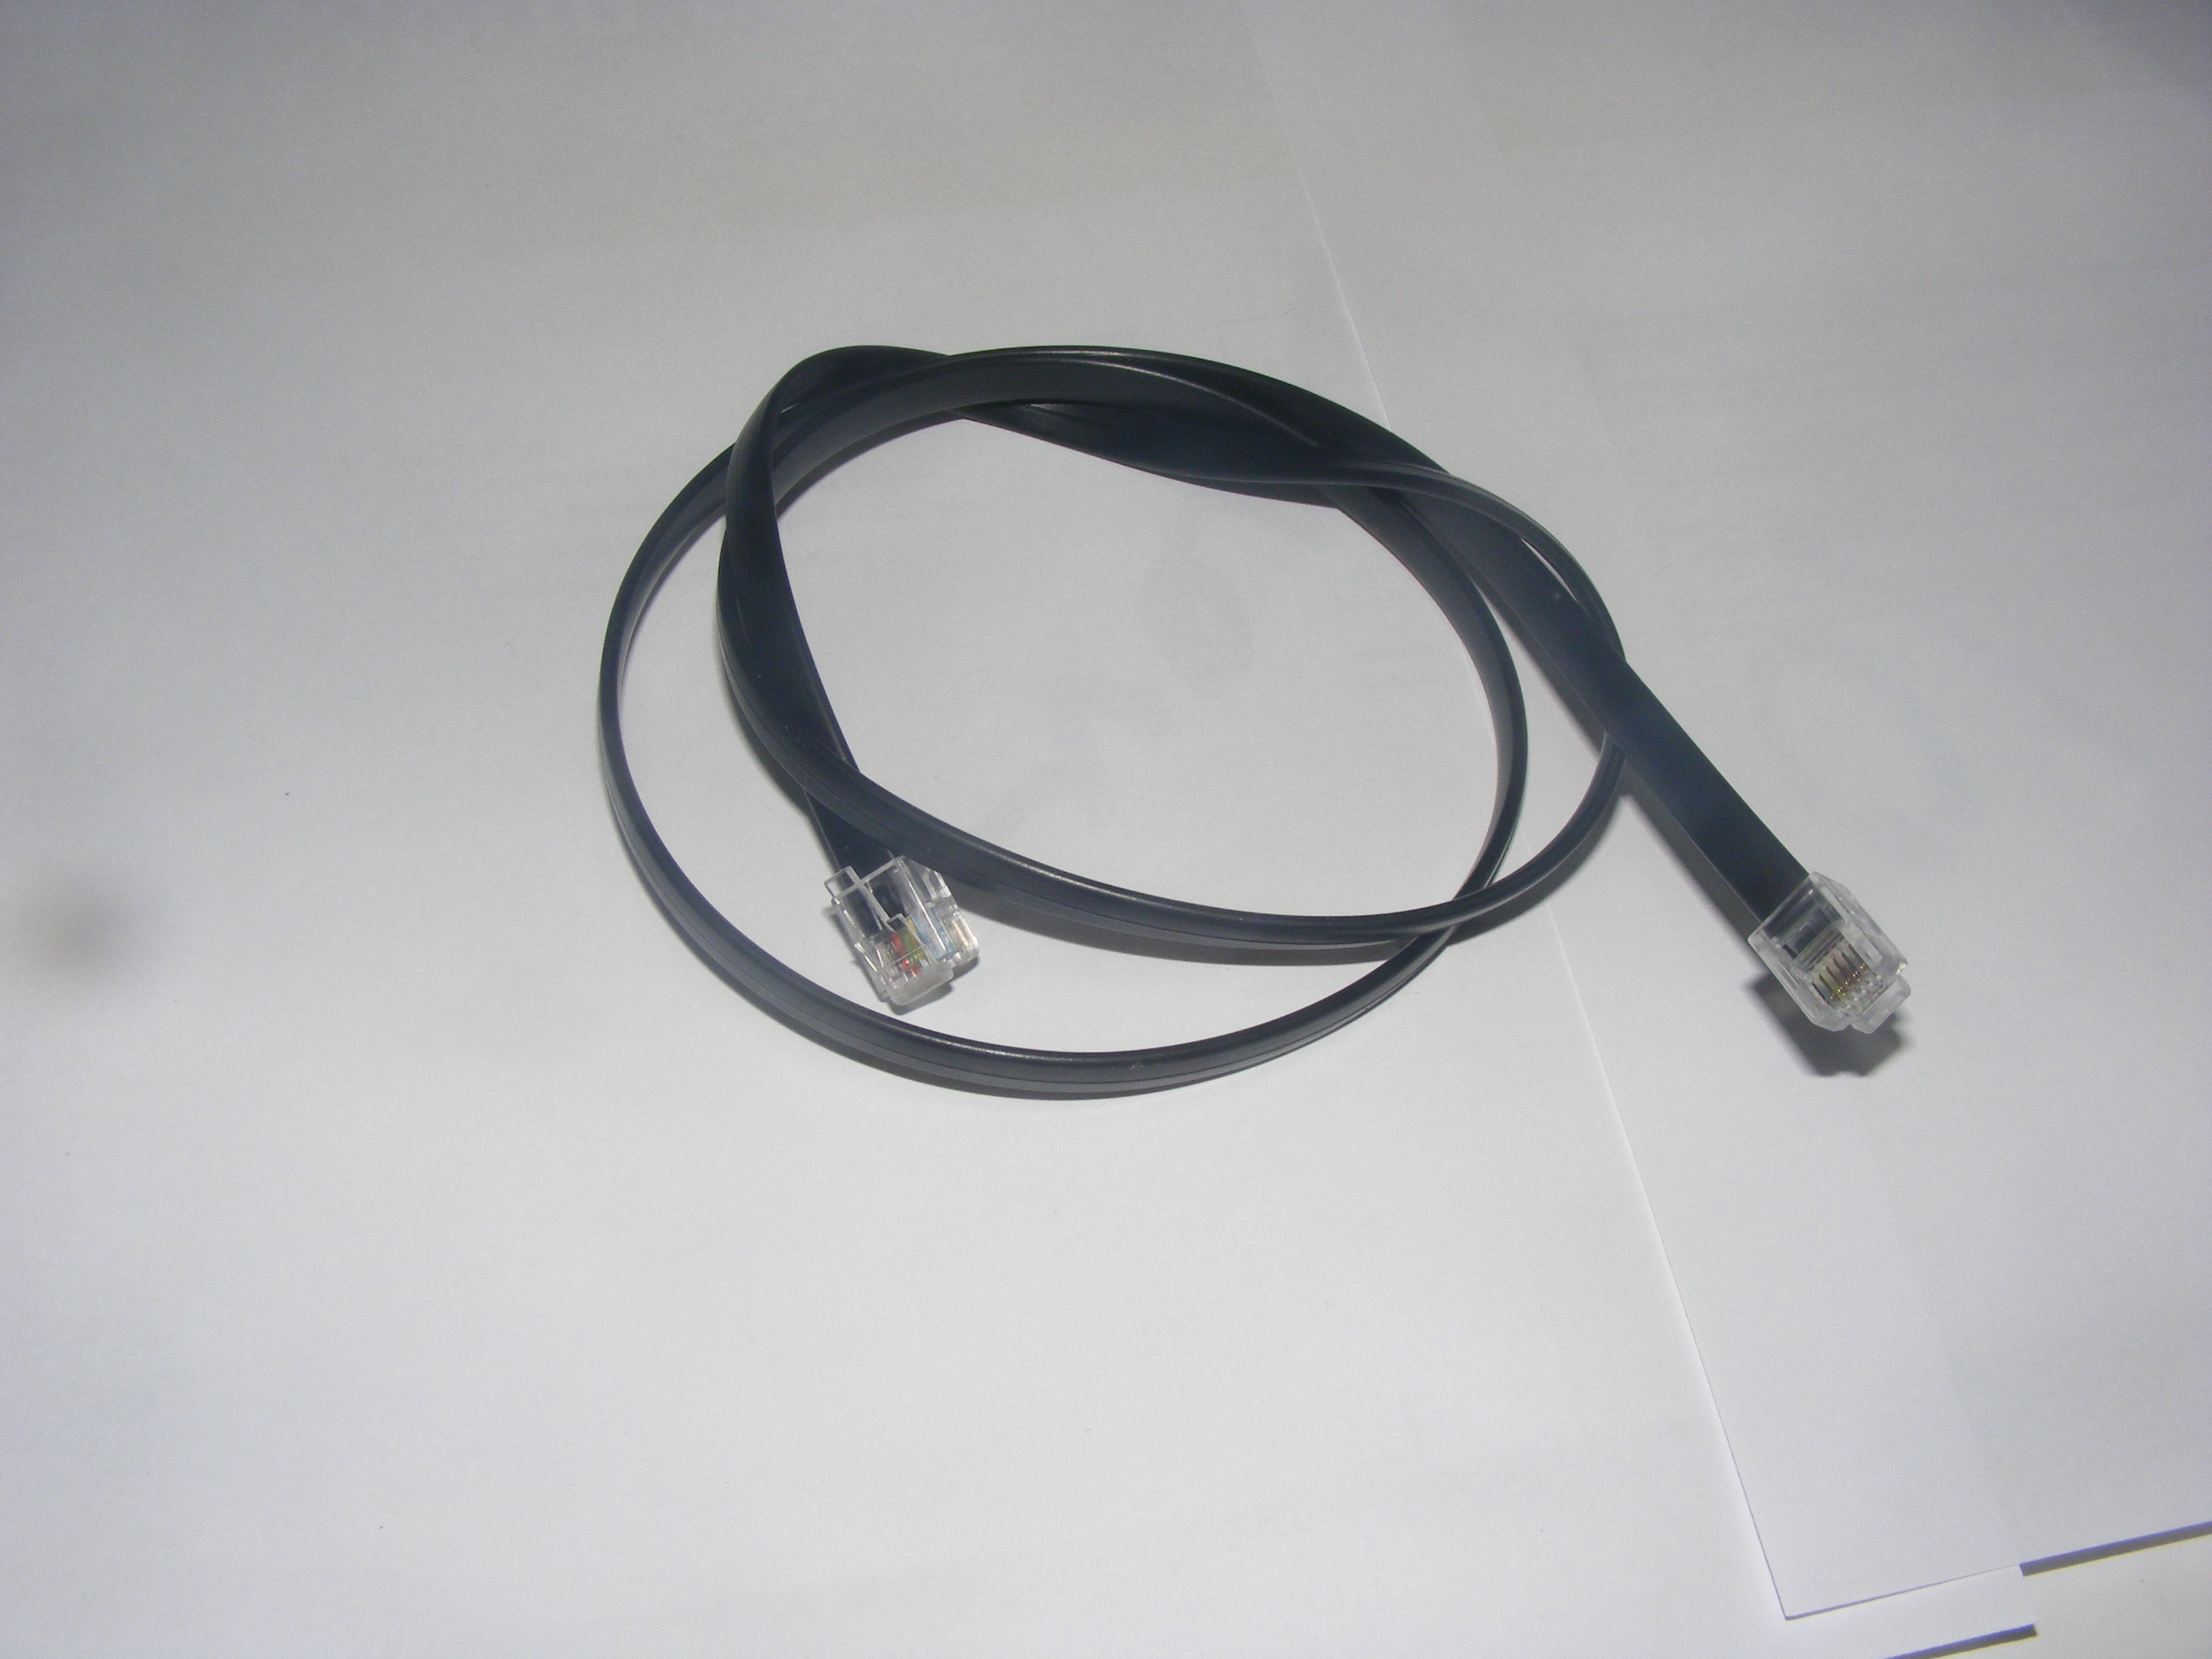 5m RJ11 rj12 6P6C Modular Cable Cord for POS Cash Drawer Kick Ca